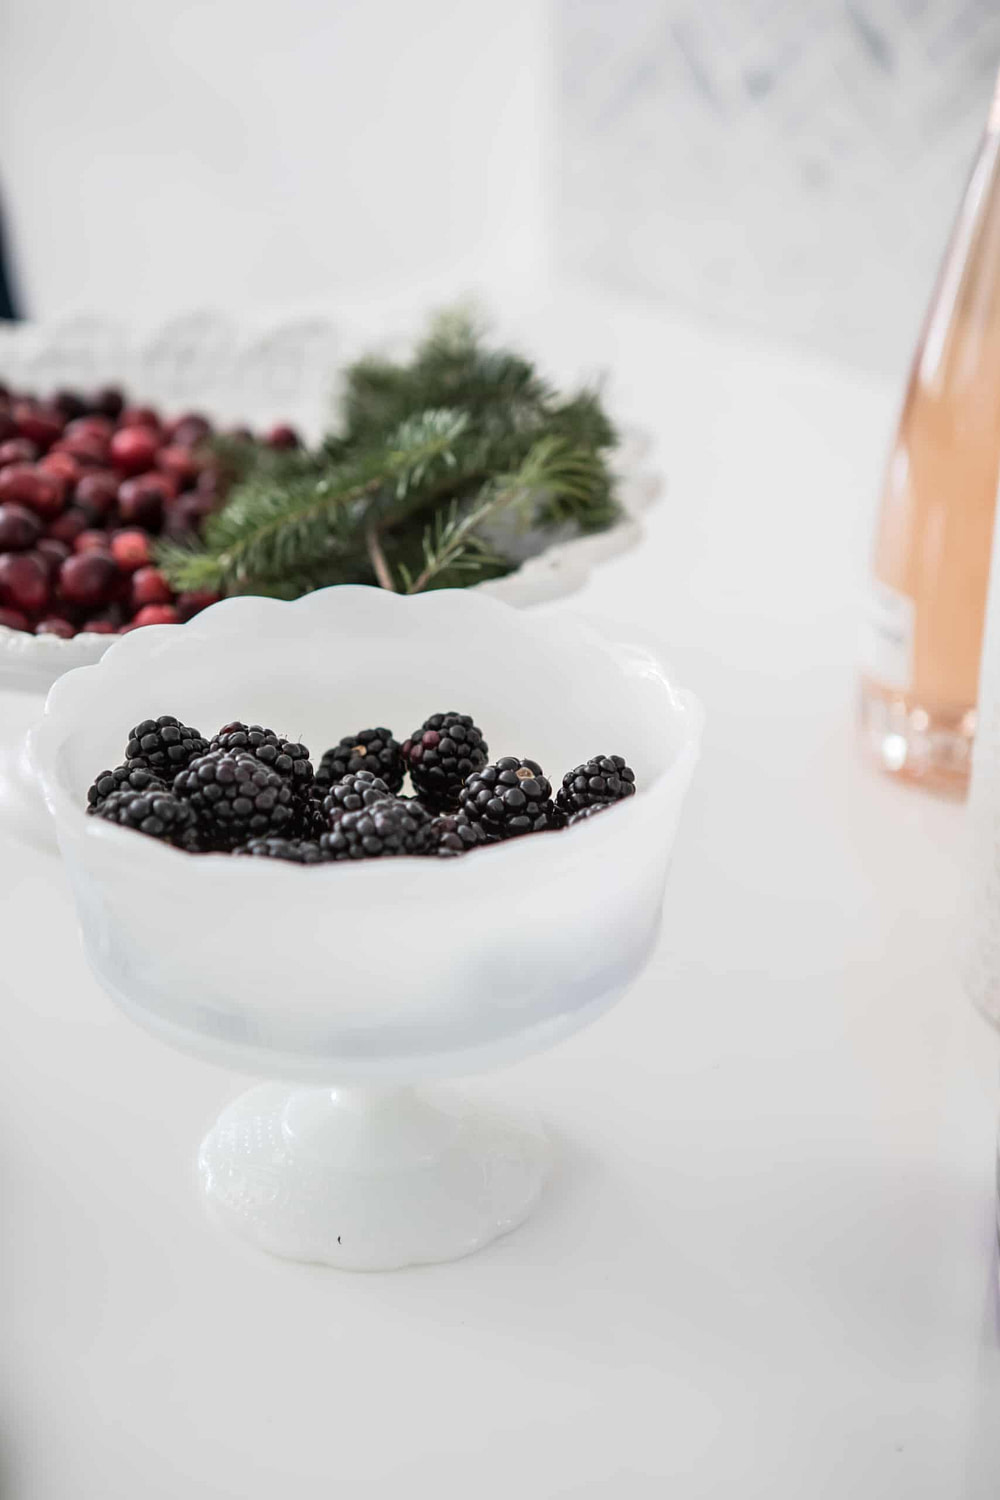 Blackberries inside a white bowl